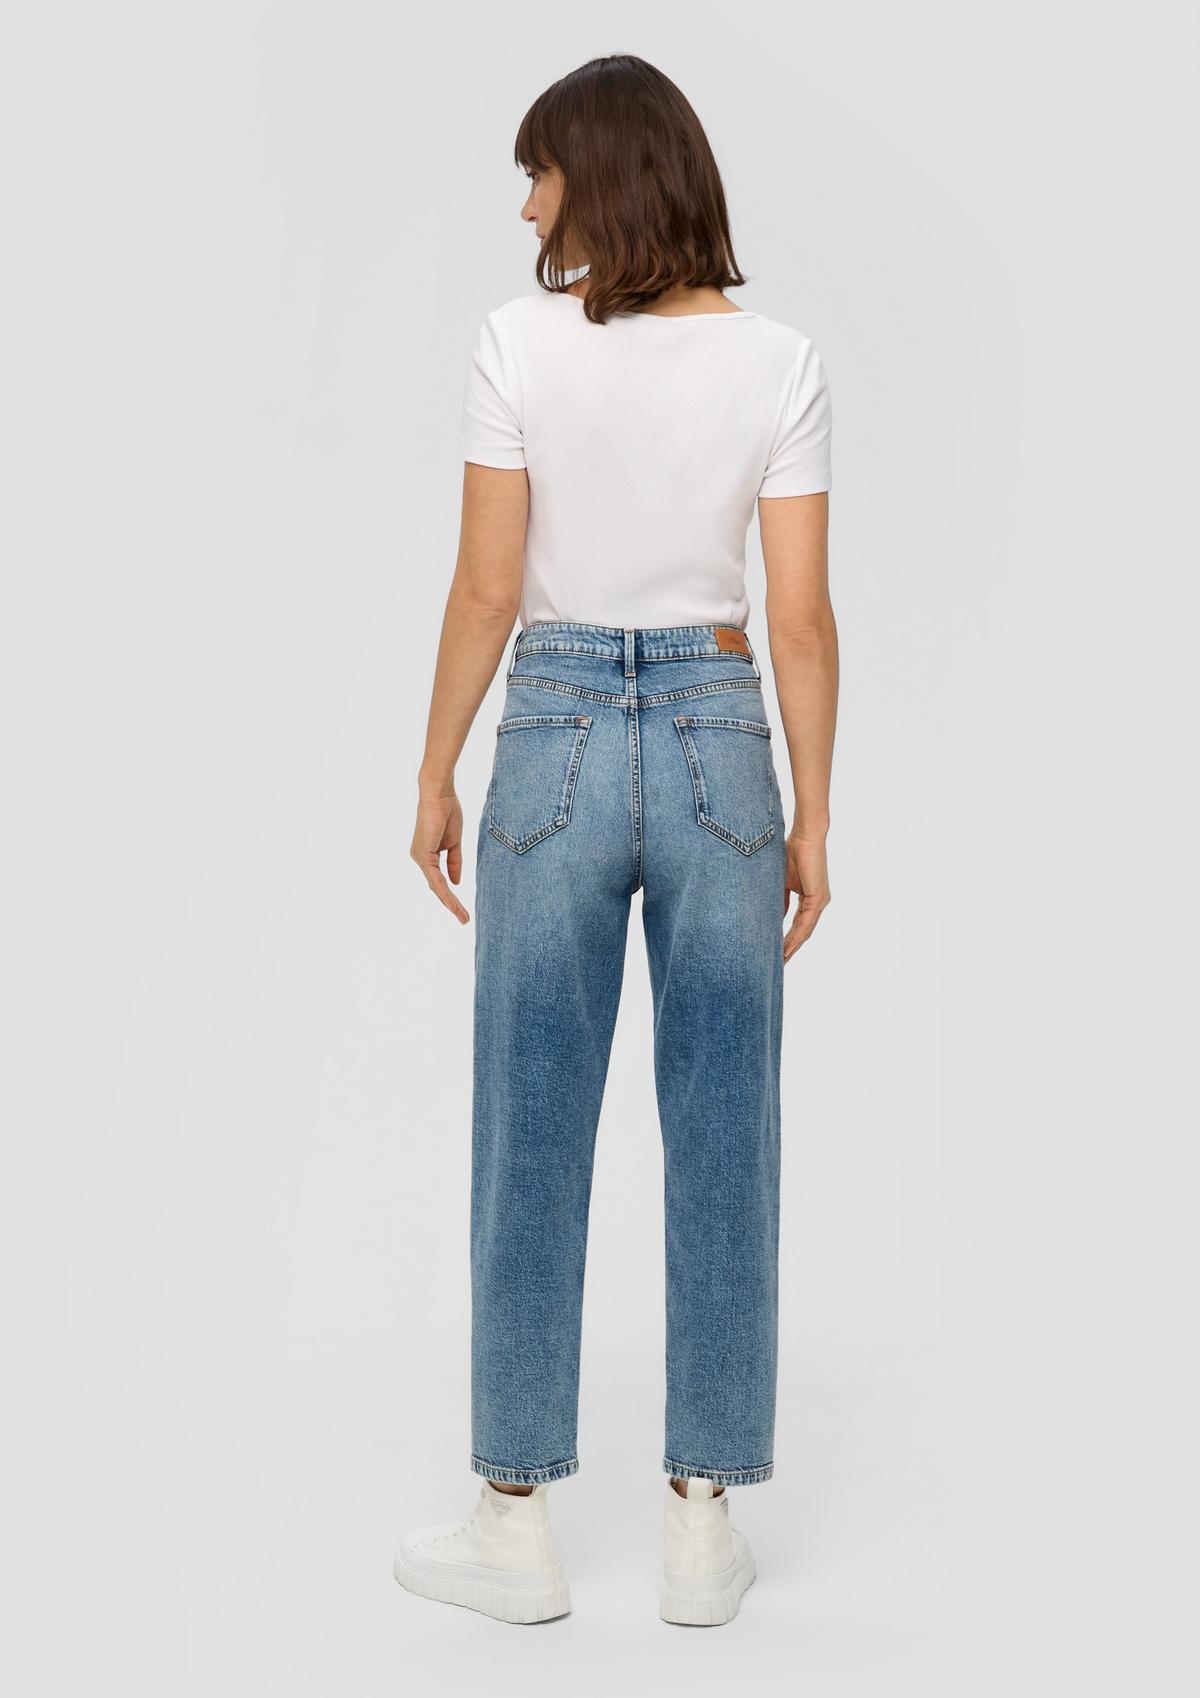 s.Oliver Mom jeans / regular fit / high rise / wide leg